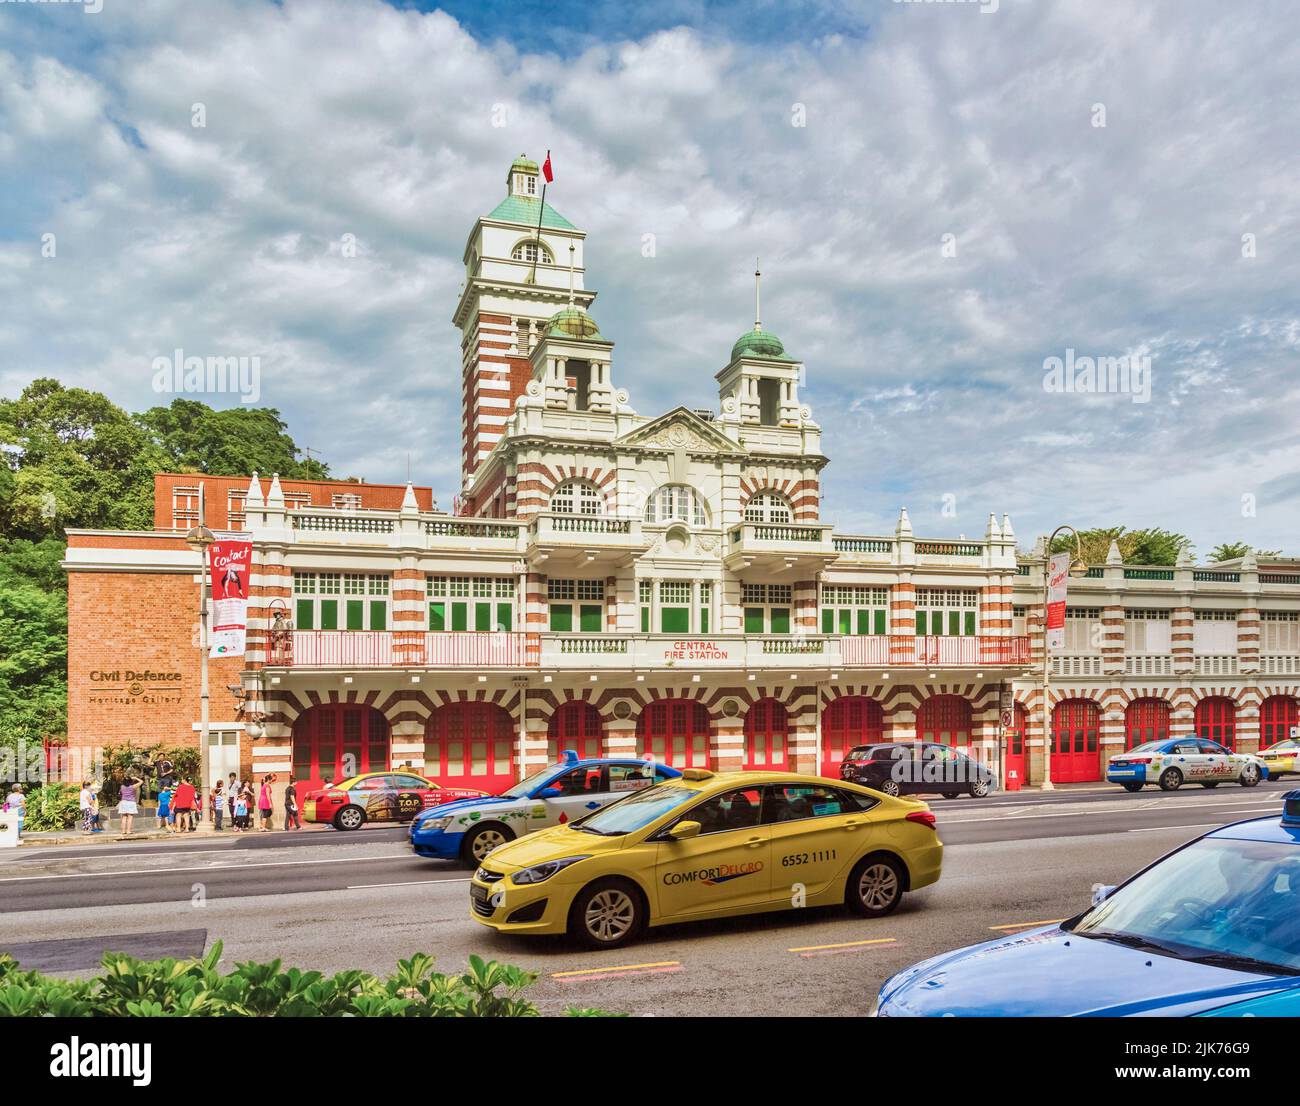 La Stazione Centrale dei vigili del fuoco, conosciuta anche come la Stazione dei vigili del fuoco di Hill Street, Repubblica di Singapore. L'edificio, che risale al 1909, è un Monumento Nazionale. Foto Stock